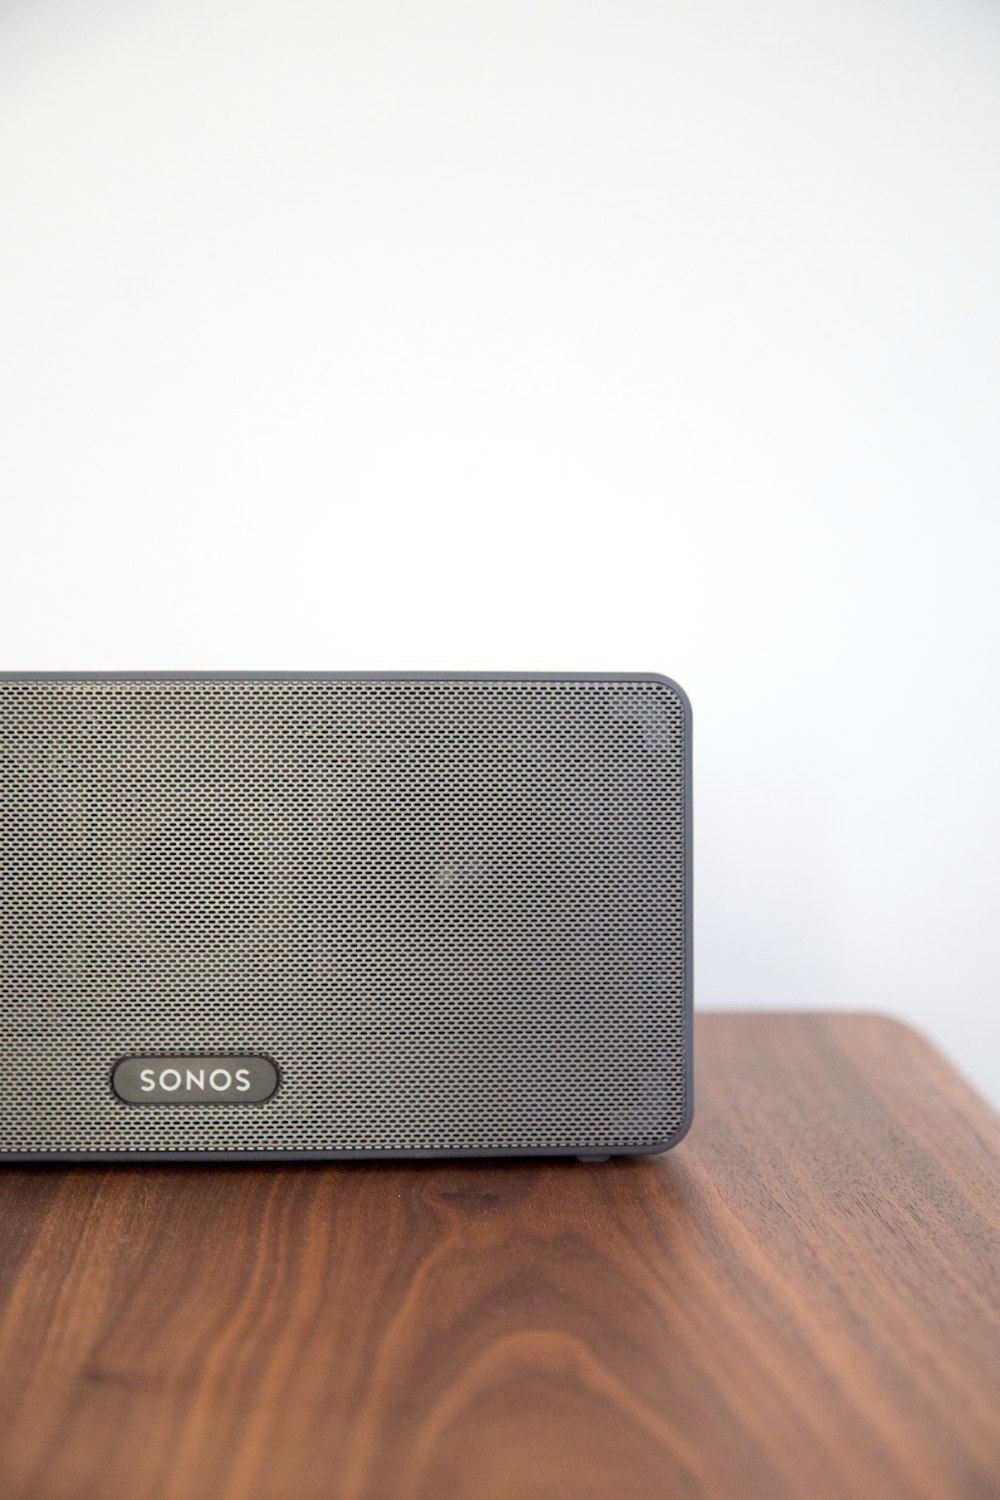 grauer Sonos-Lautsprecher auf dem Tisch